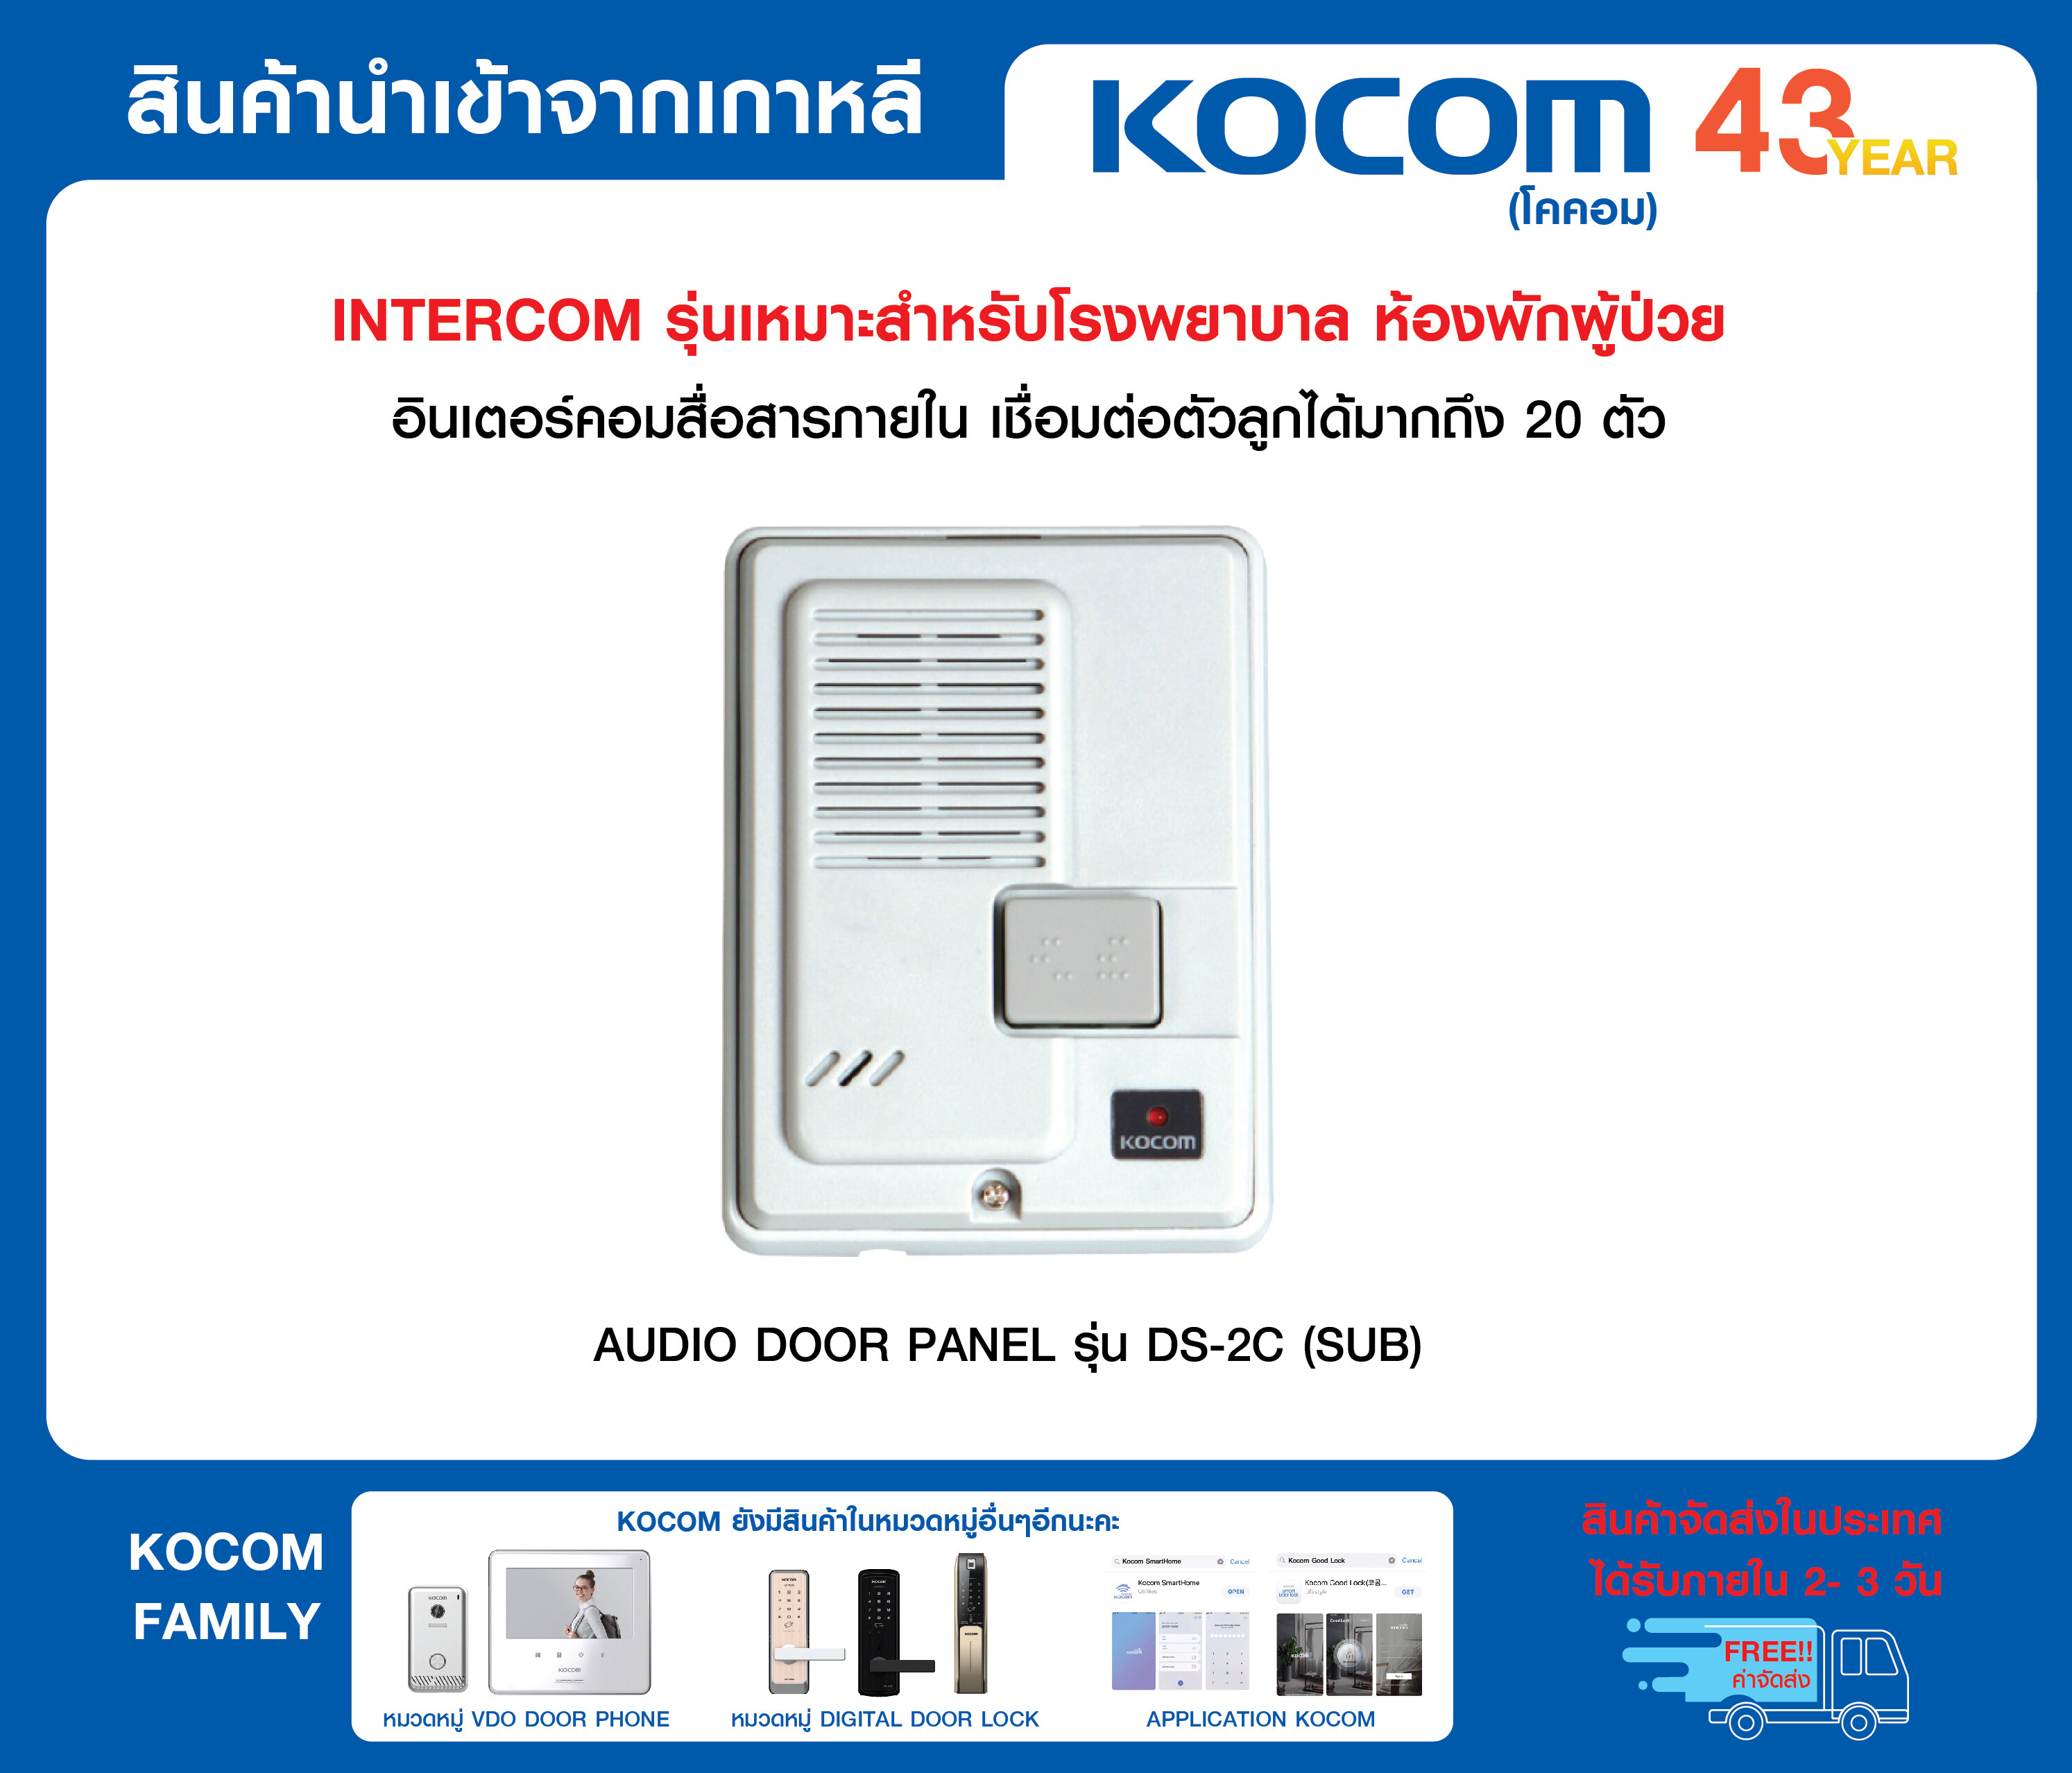 KOCOM INTERCOM อินเตอร์คอม สื่อสารภายใน ตัวลูก รุ่น DS-2C สำหรับอินเตอร์คอมรุ่น KIP-612ML/KIP-620ML เดินสายไกล 2 กิโลเมตร